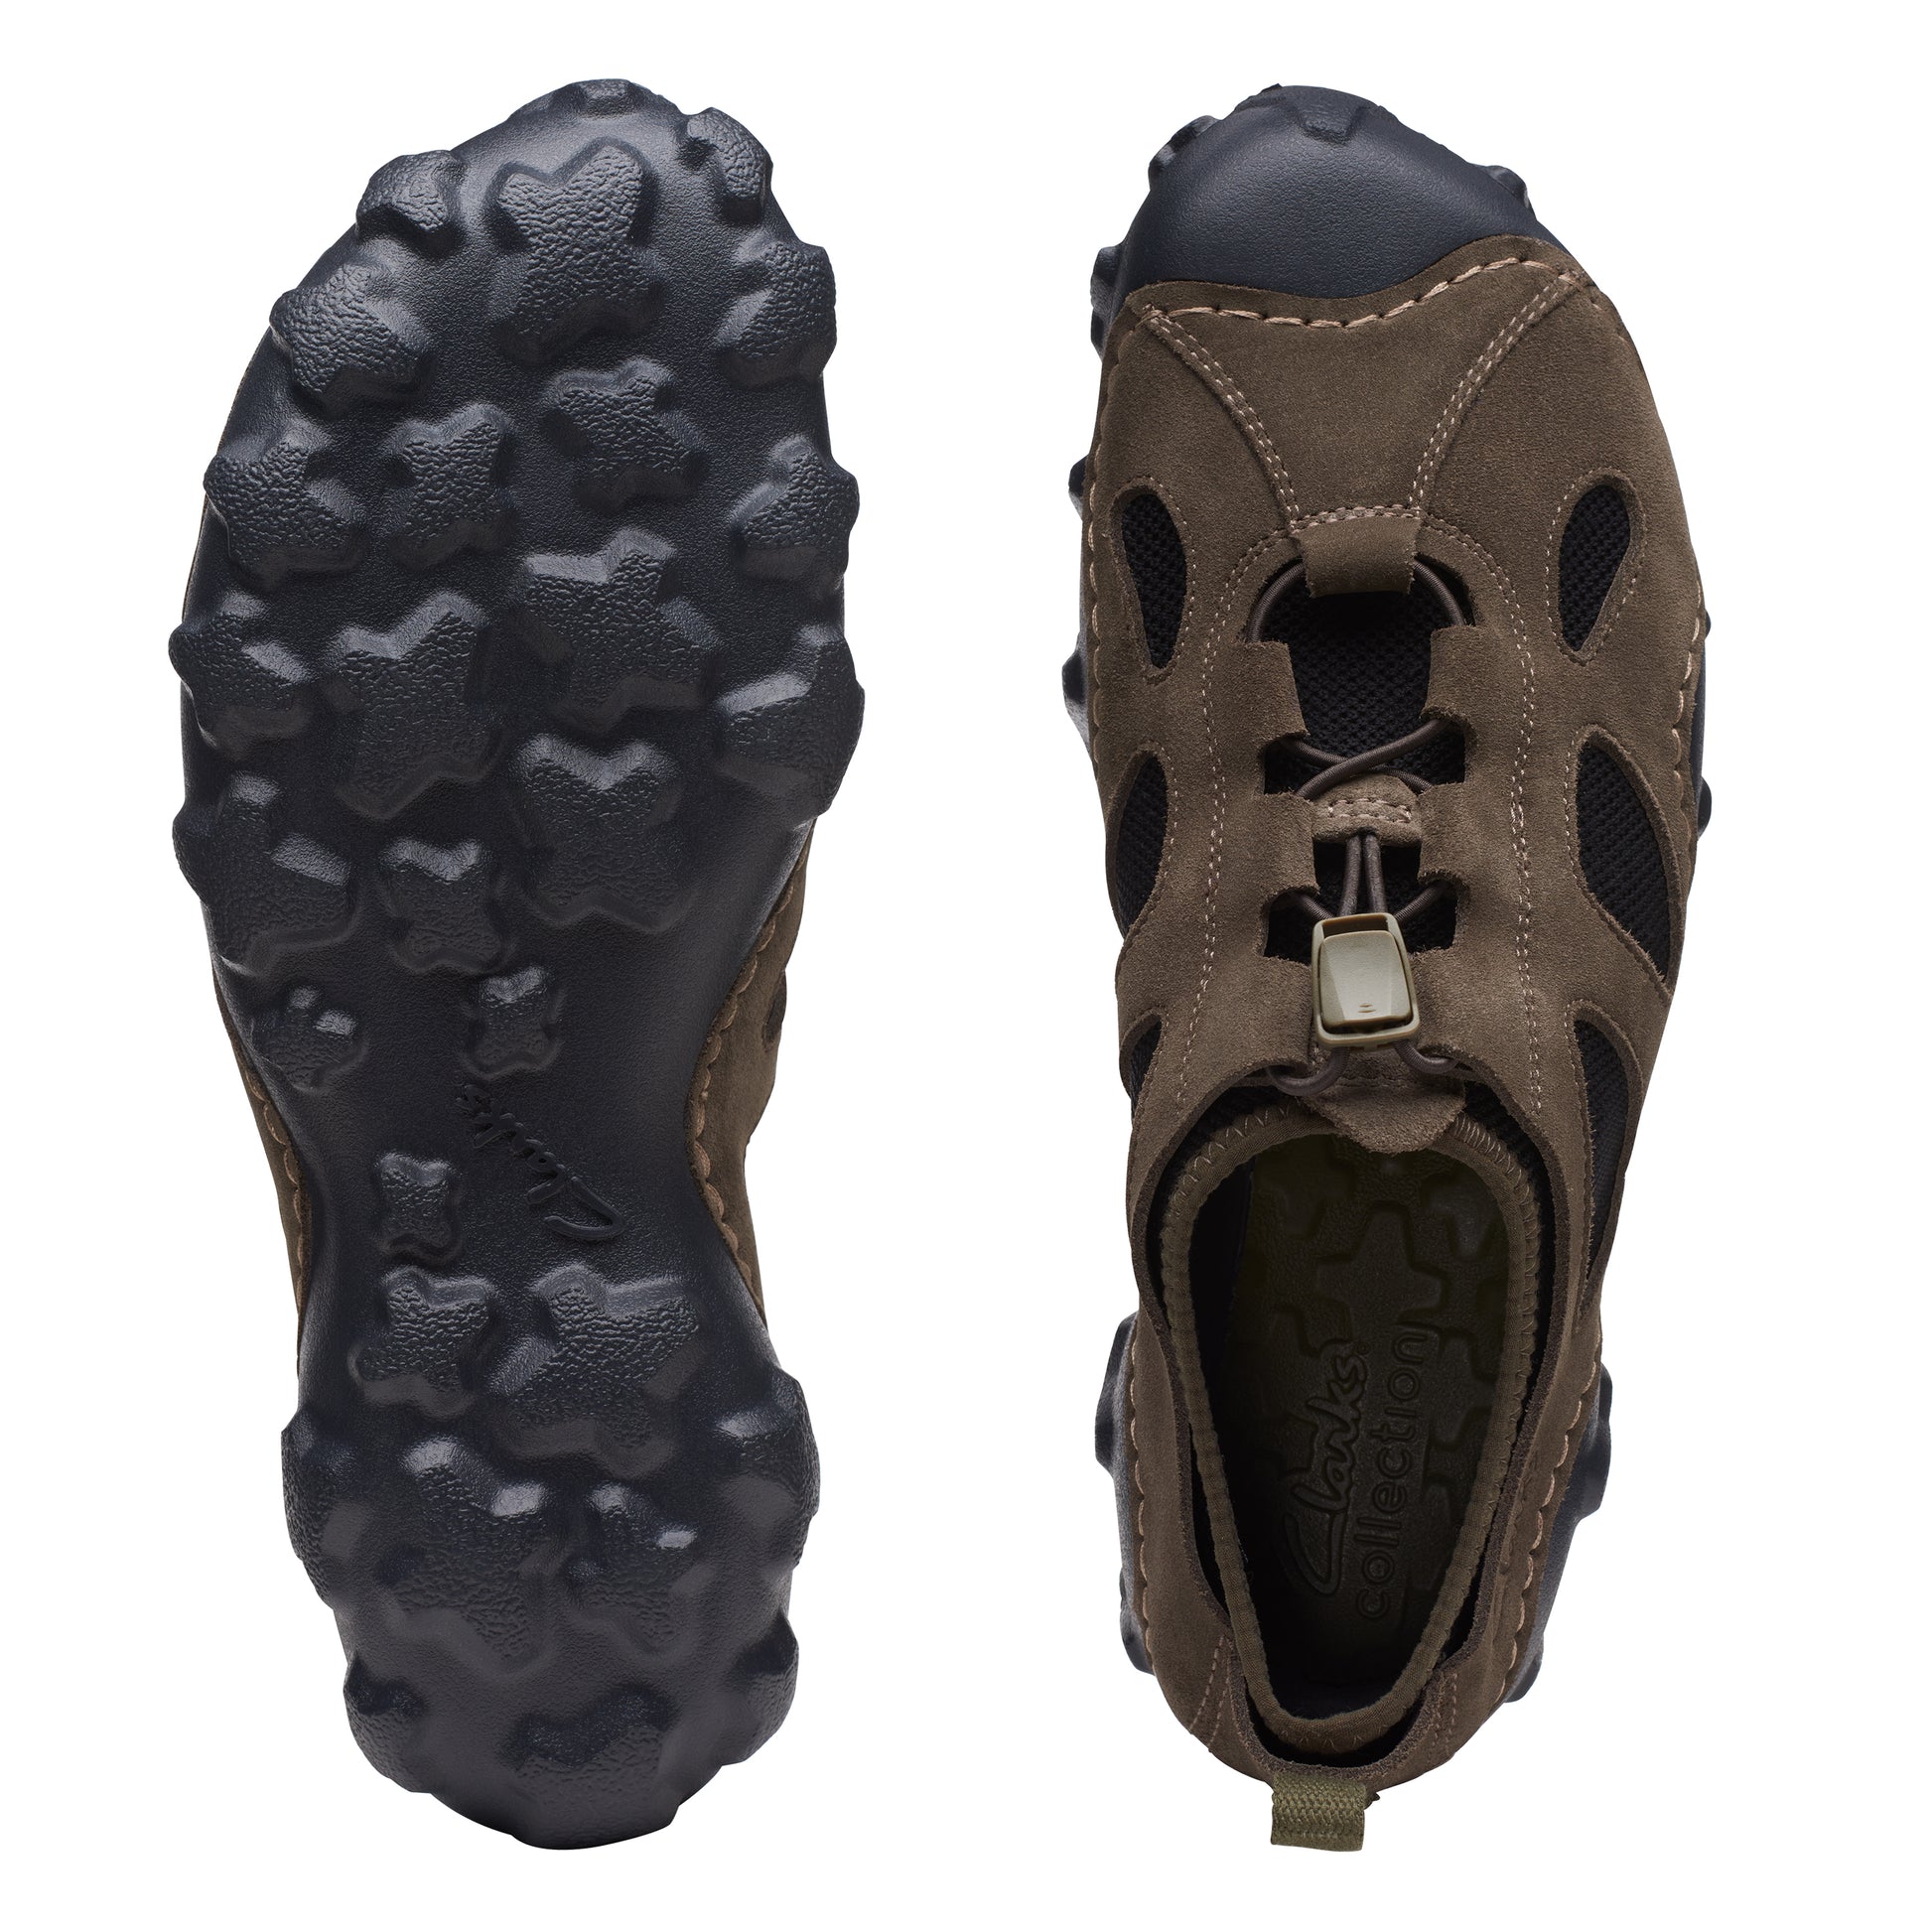 Zapatos Derby De La Marca Clarks Para Hombre Modelo Mokolite Trail Taupe SuedeEn Color Marrón